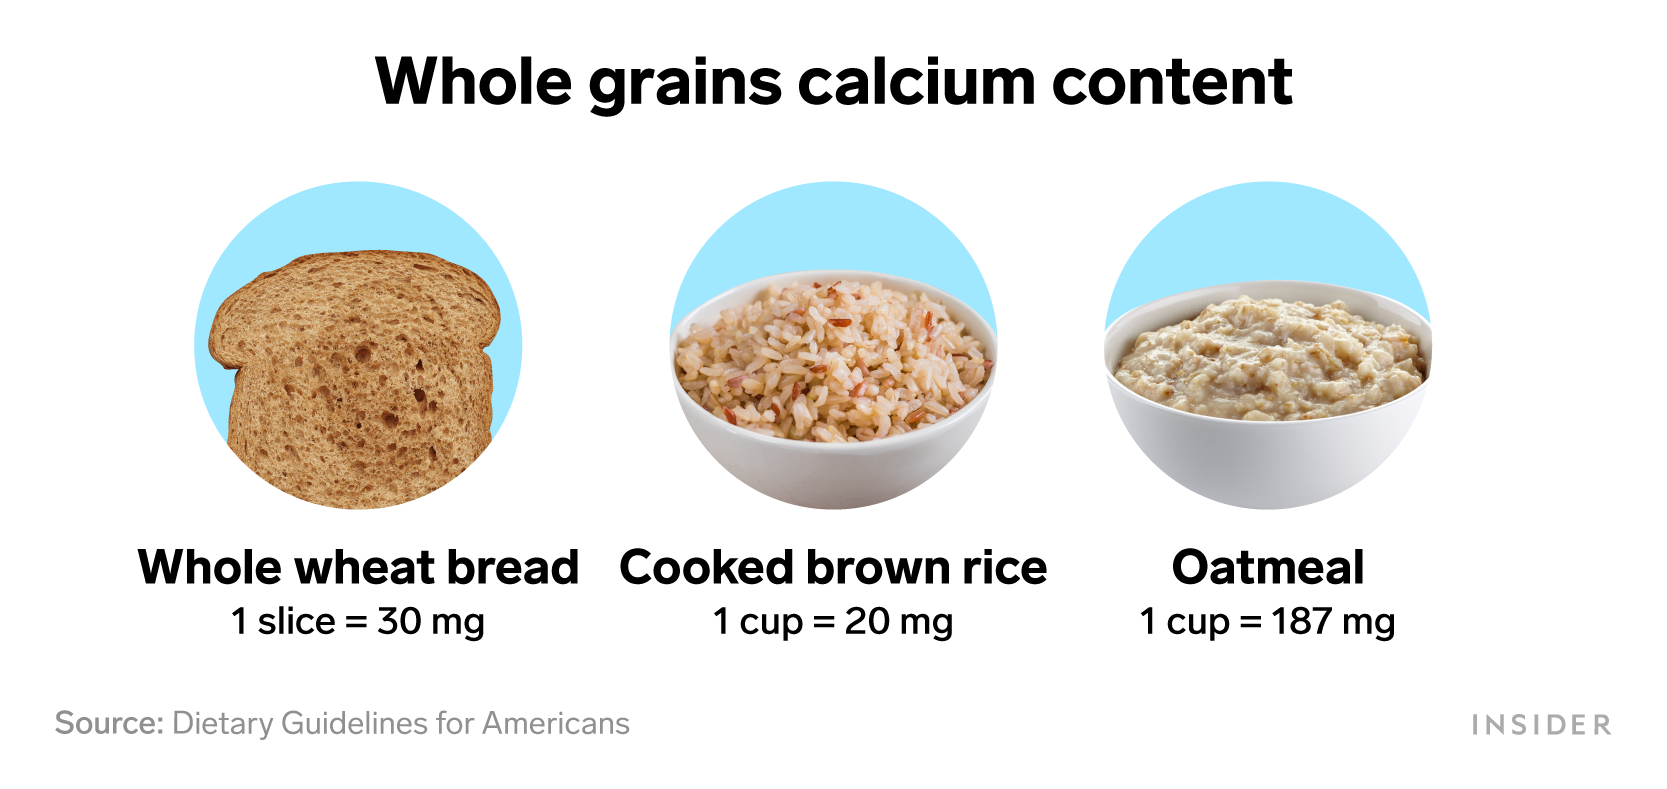 Foods that are rich in calcium: Whole grains calcium content